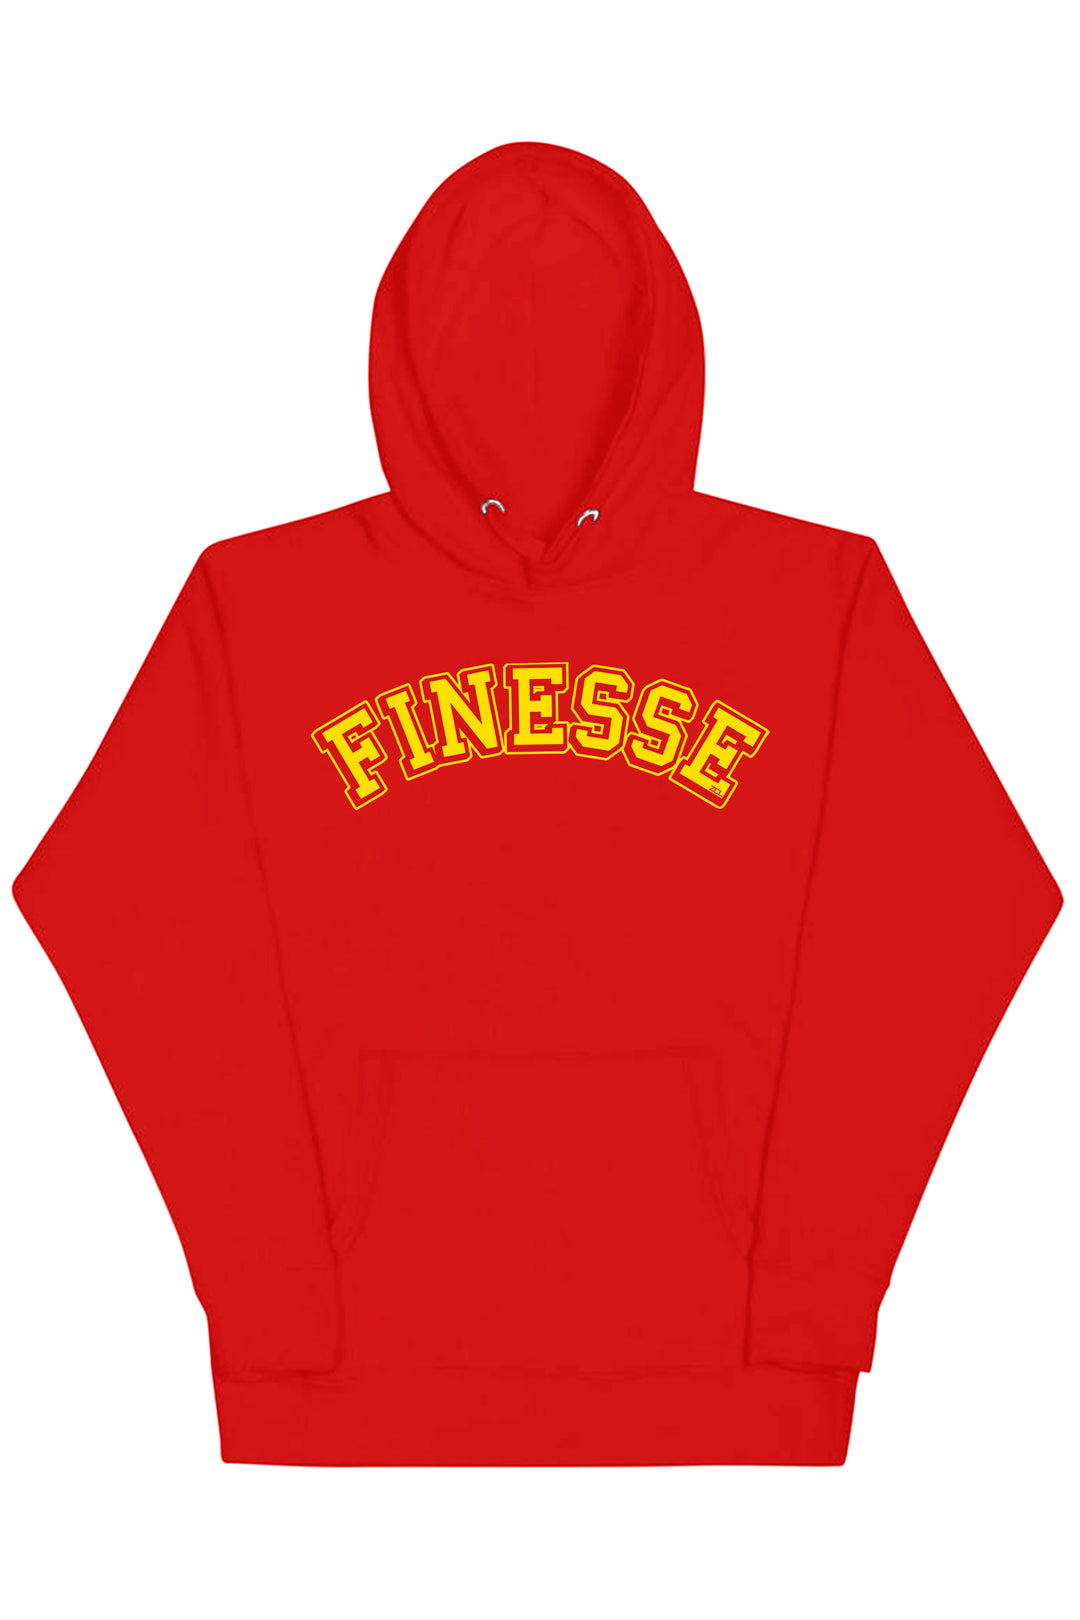 Finesse Hoodie (Yellow Logo) - Zamage